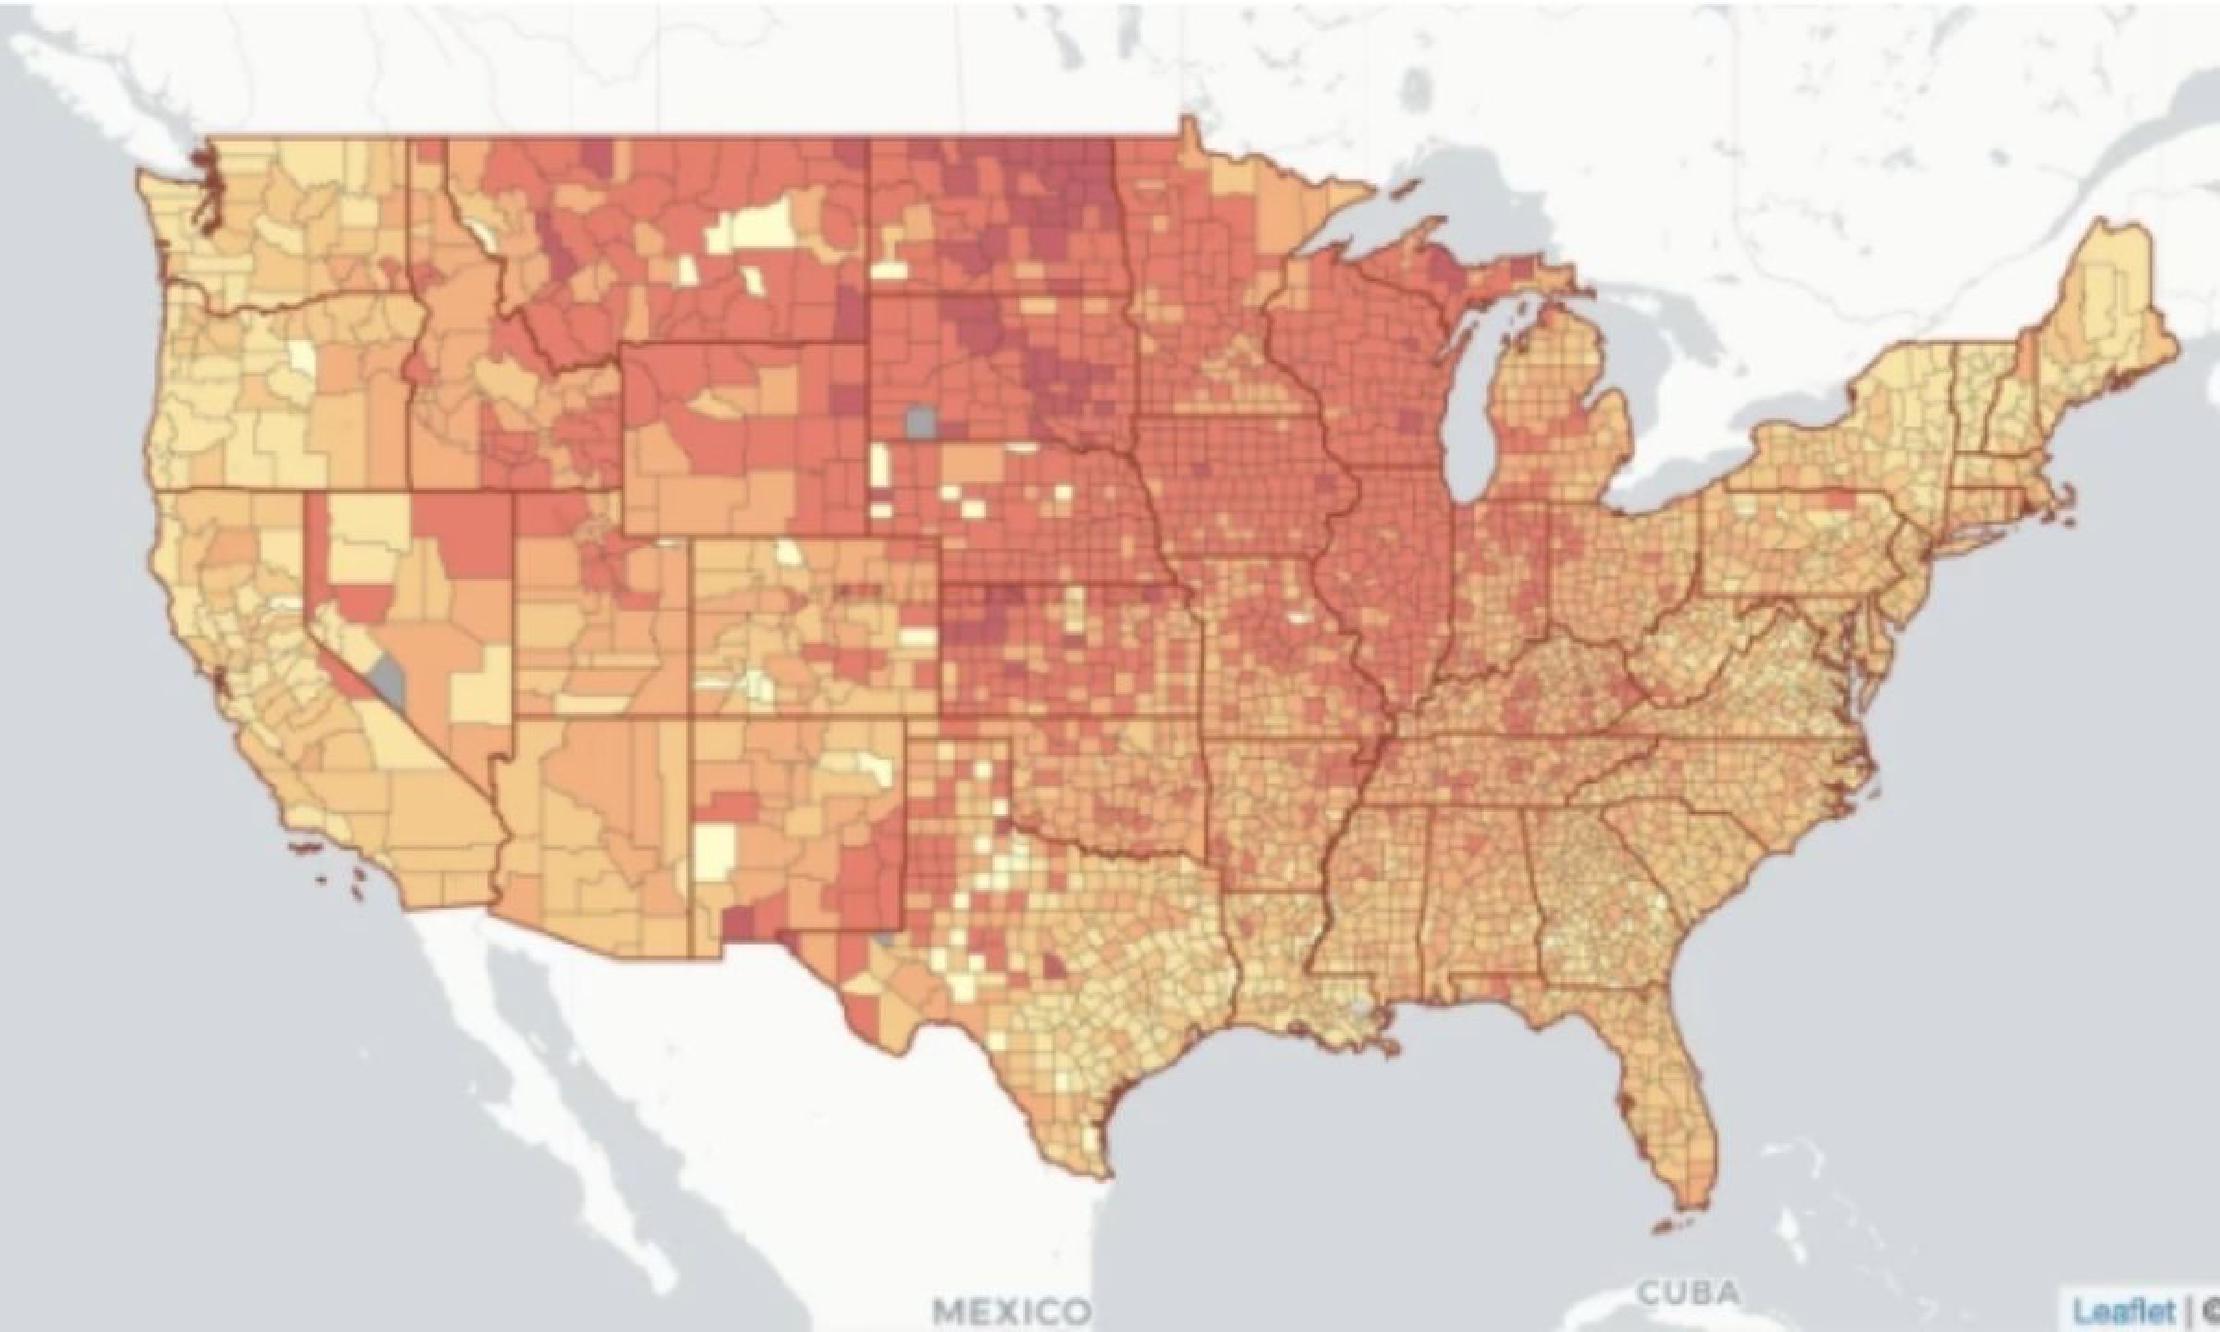 Thumbnail a heatmap of the U.S.